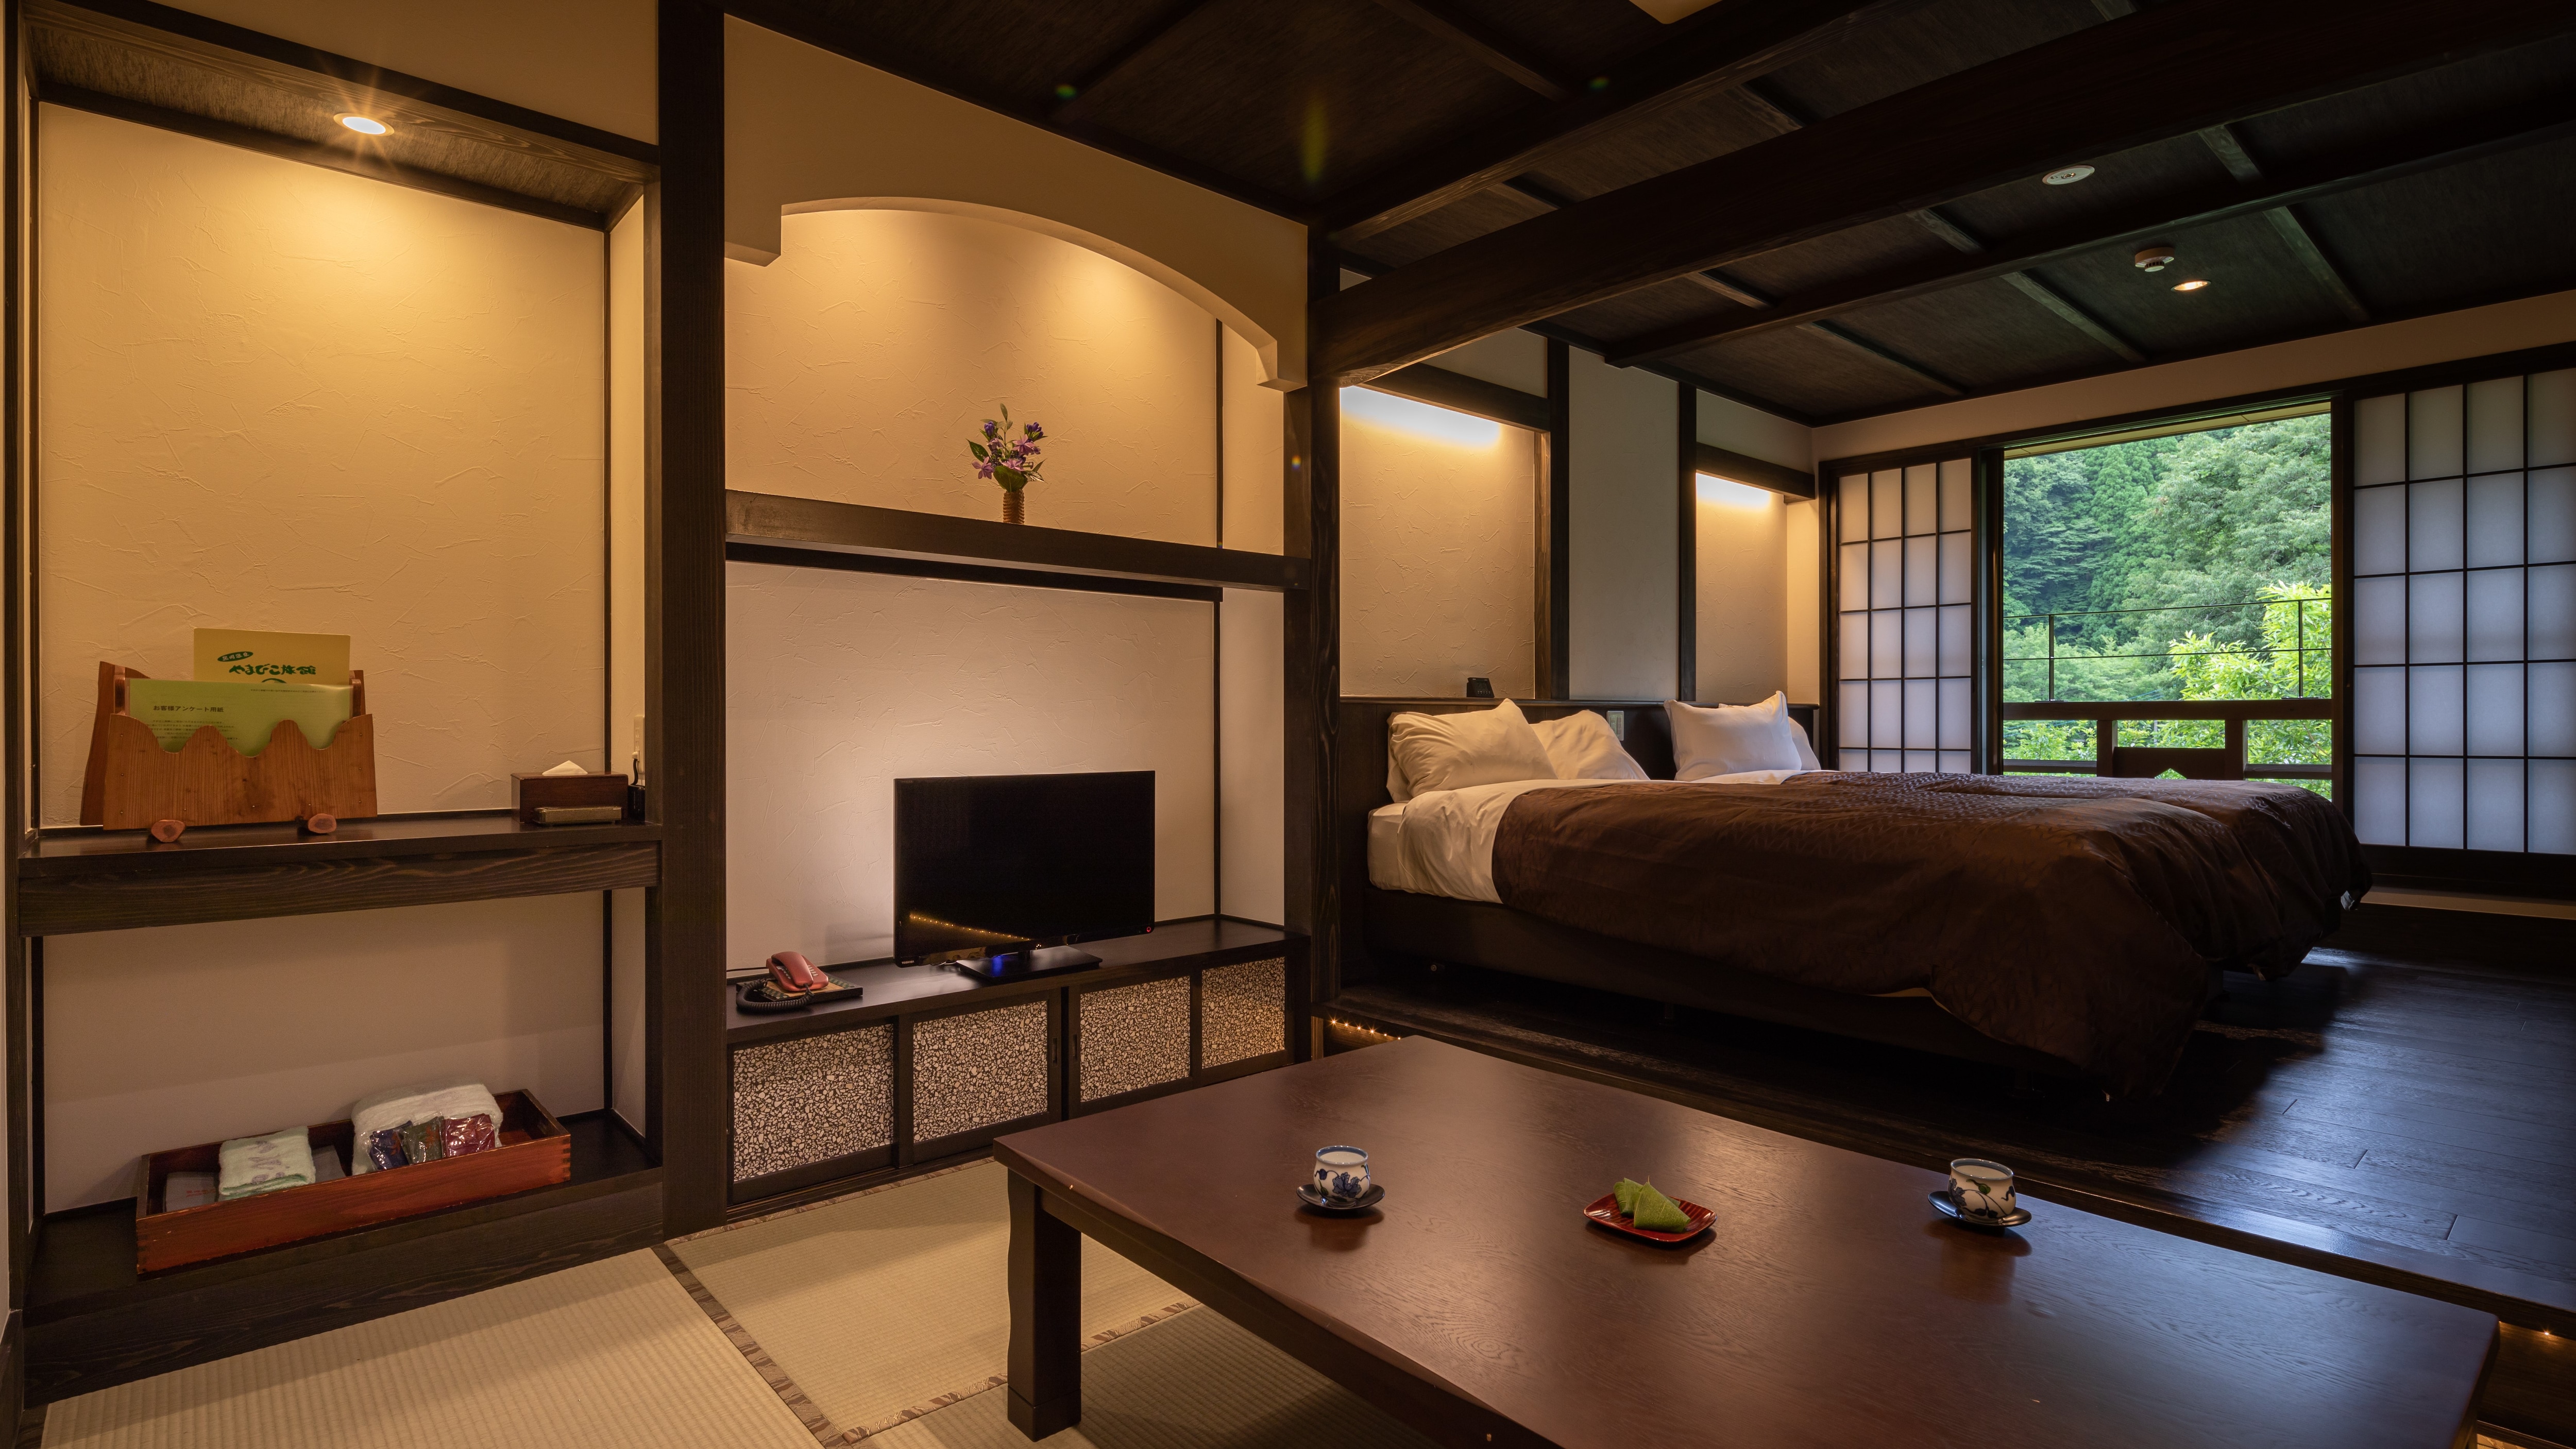 日式和西式房間 II 的例子。這種類型有3個房間。